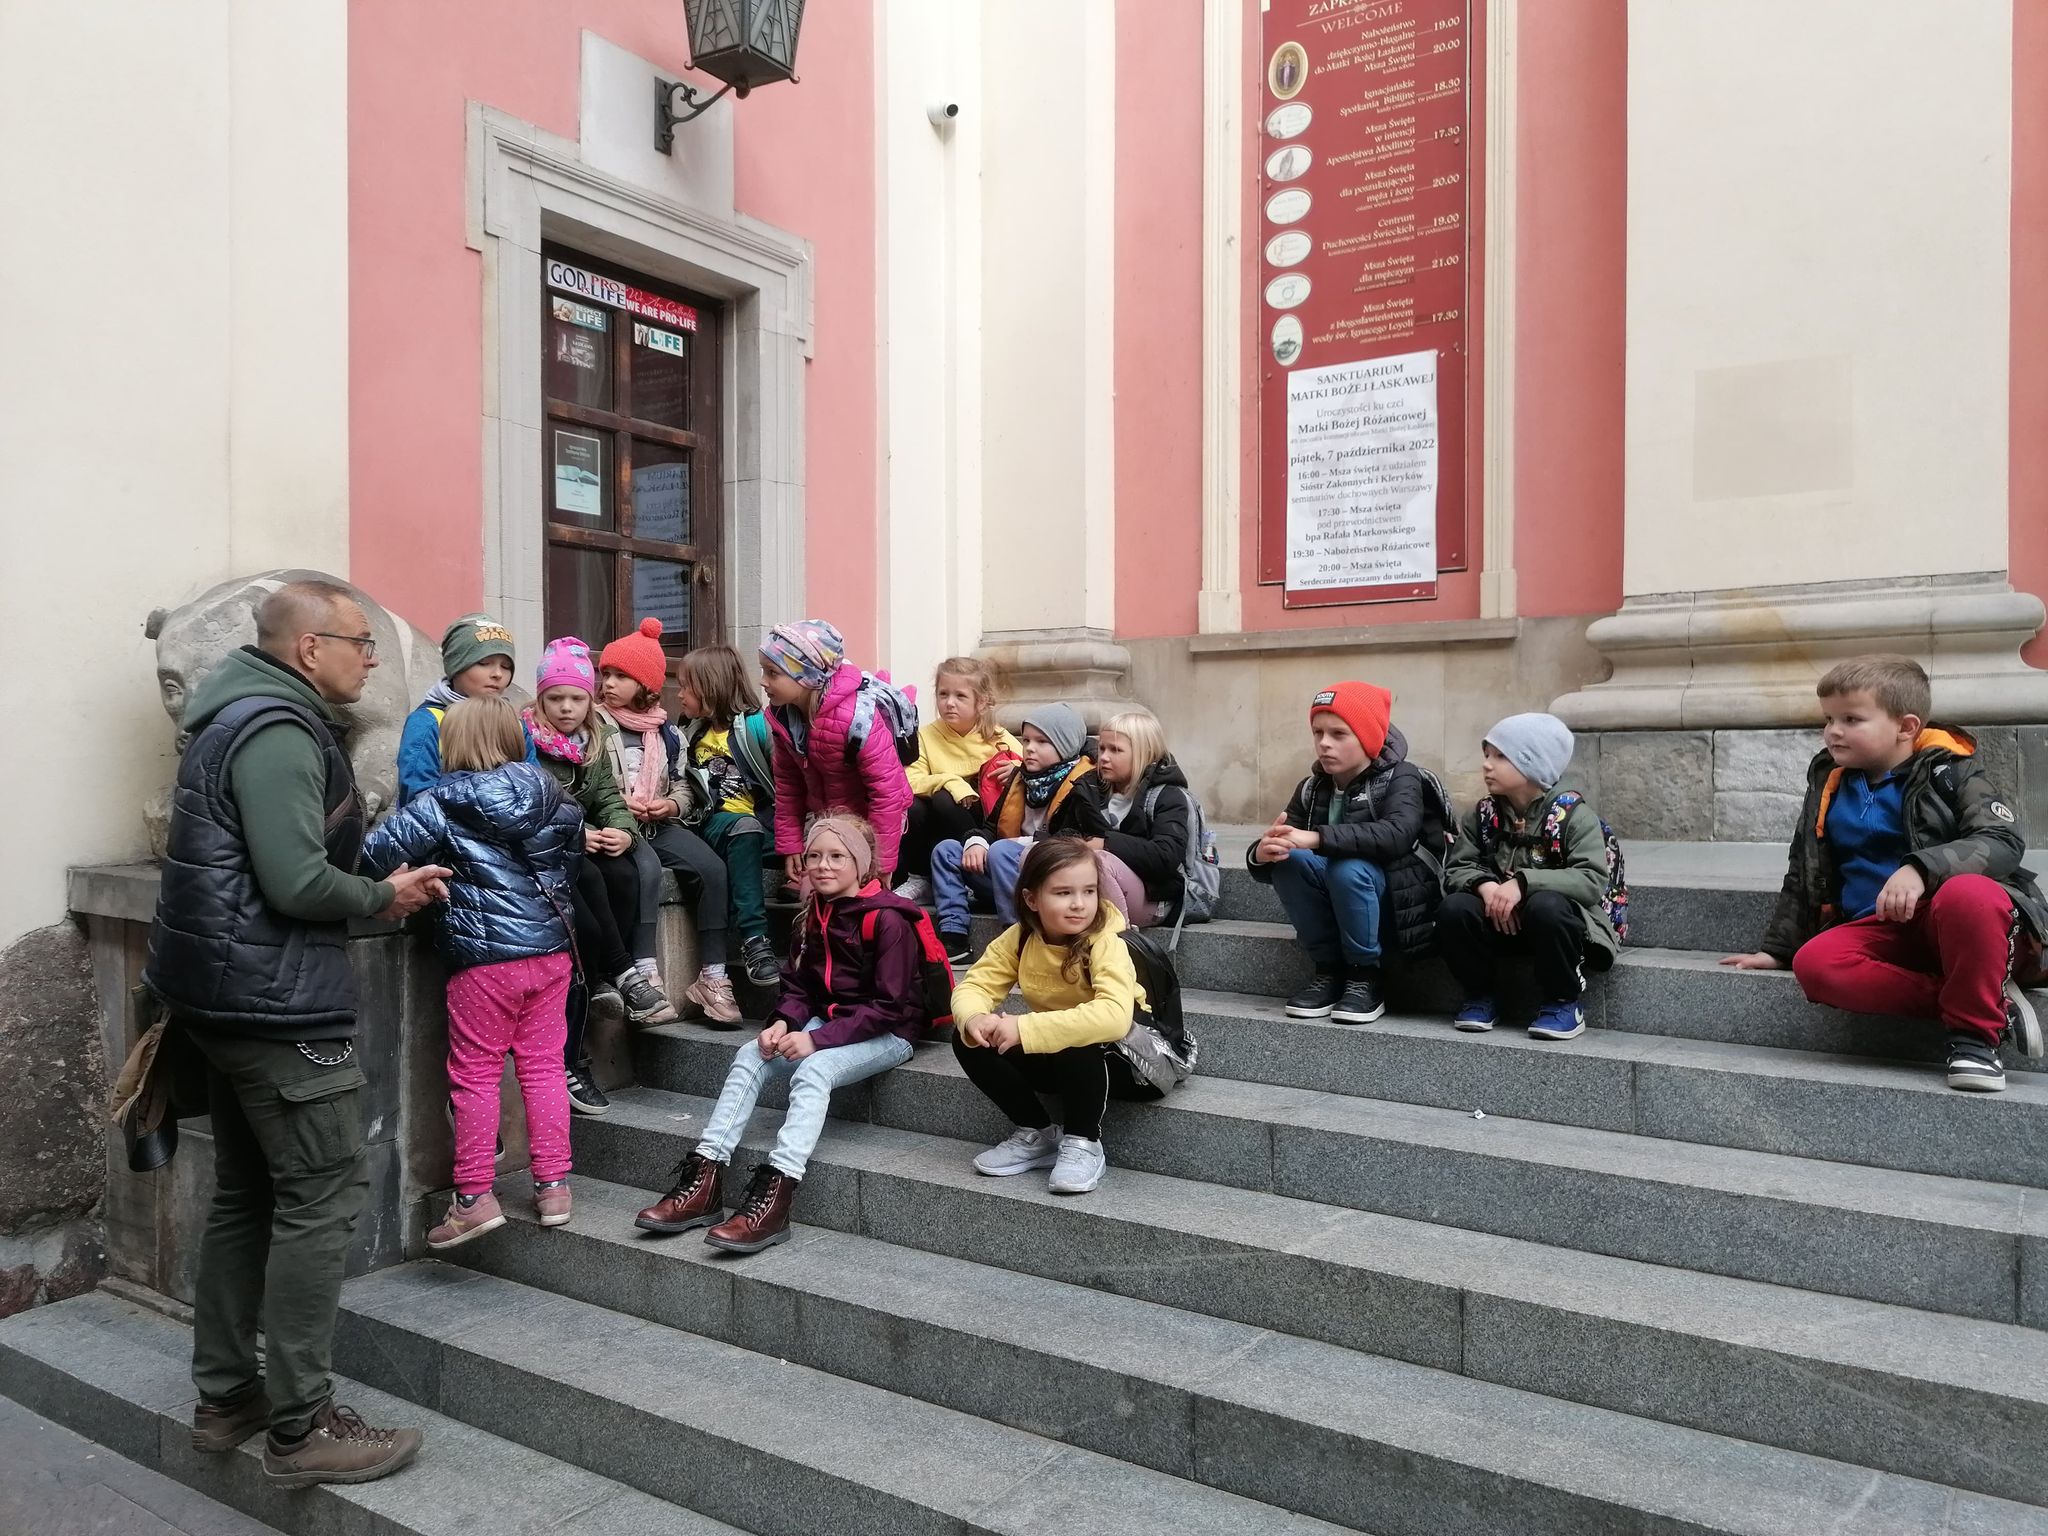 Dzieci siedzą na schodach przy budynku. Przed nimi stoi mężczyzna